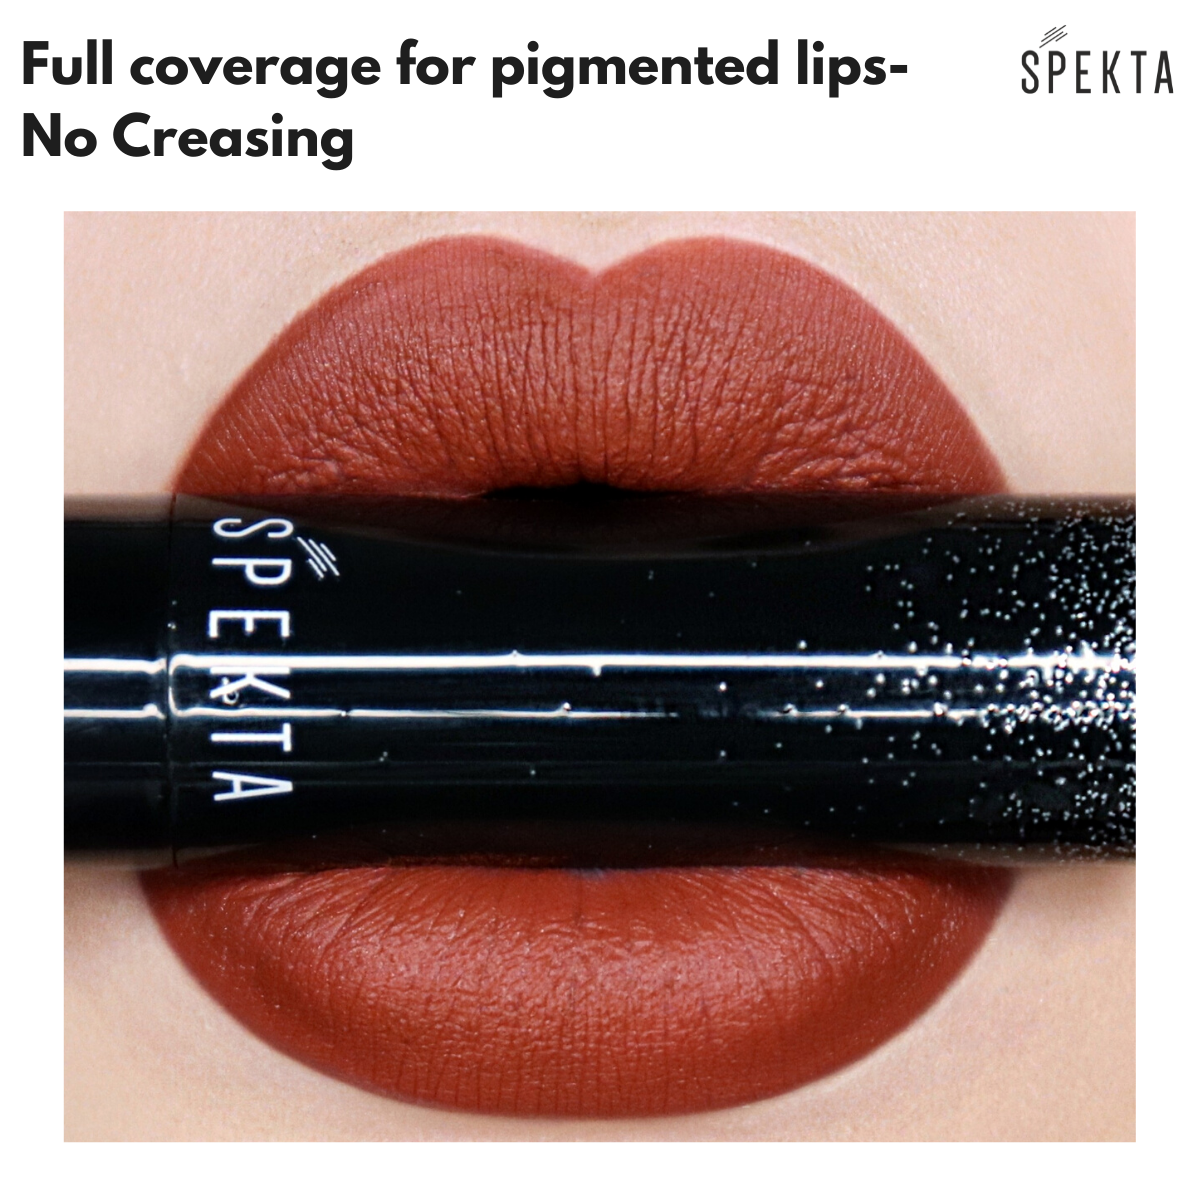 spekta hyper pigmented matte lipstick in orange shades